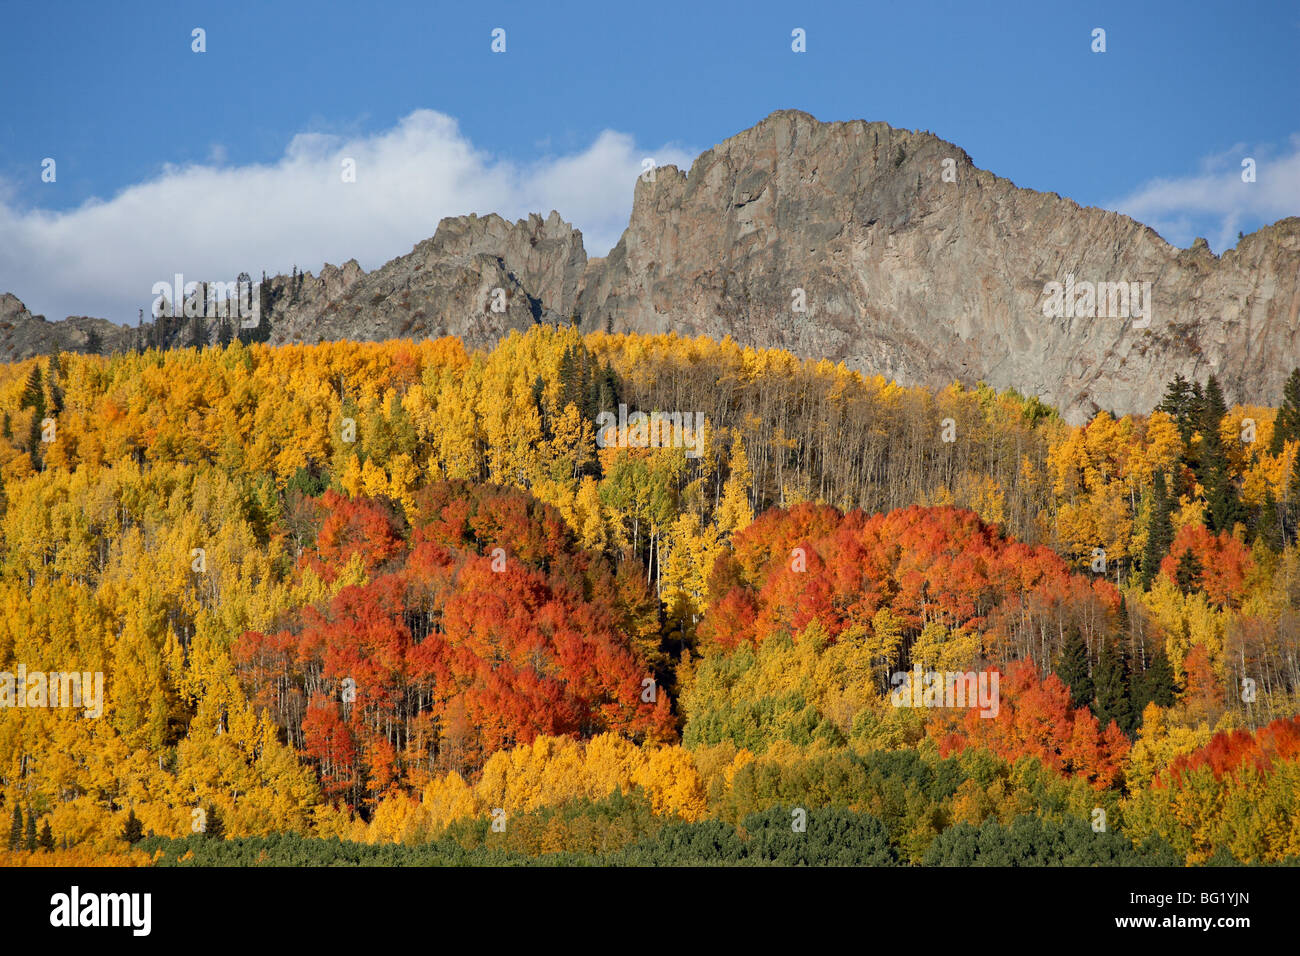 La digue avec les couleurs de l'automne, Grand-Mesa-Uncompahgre la Forêt Nationale de Gunnison, Colorado, États-Unis d'Amérique, Amérique du Nord Banque D'Images